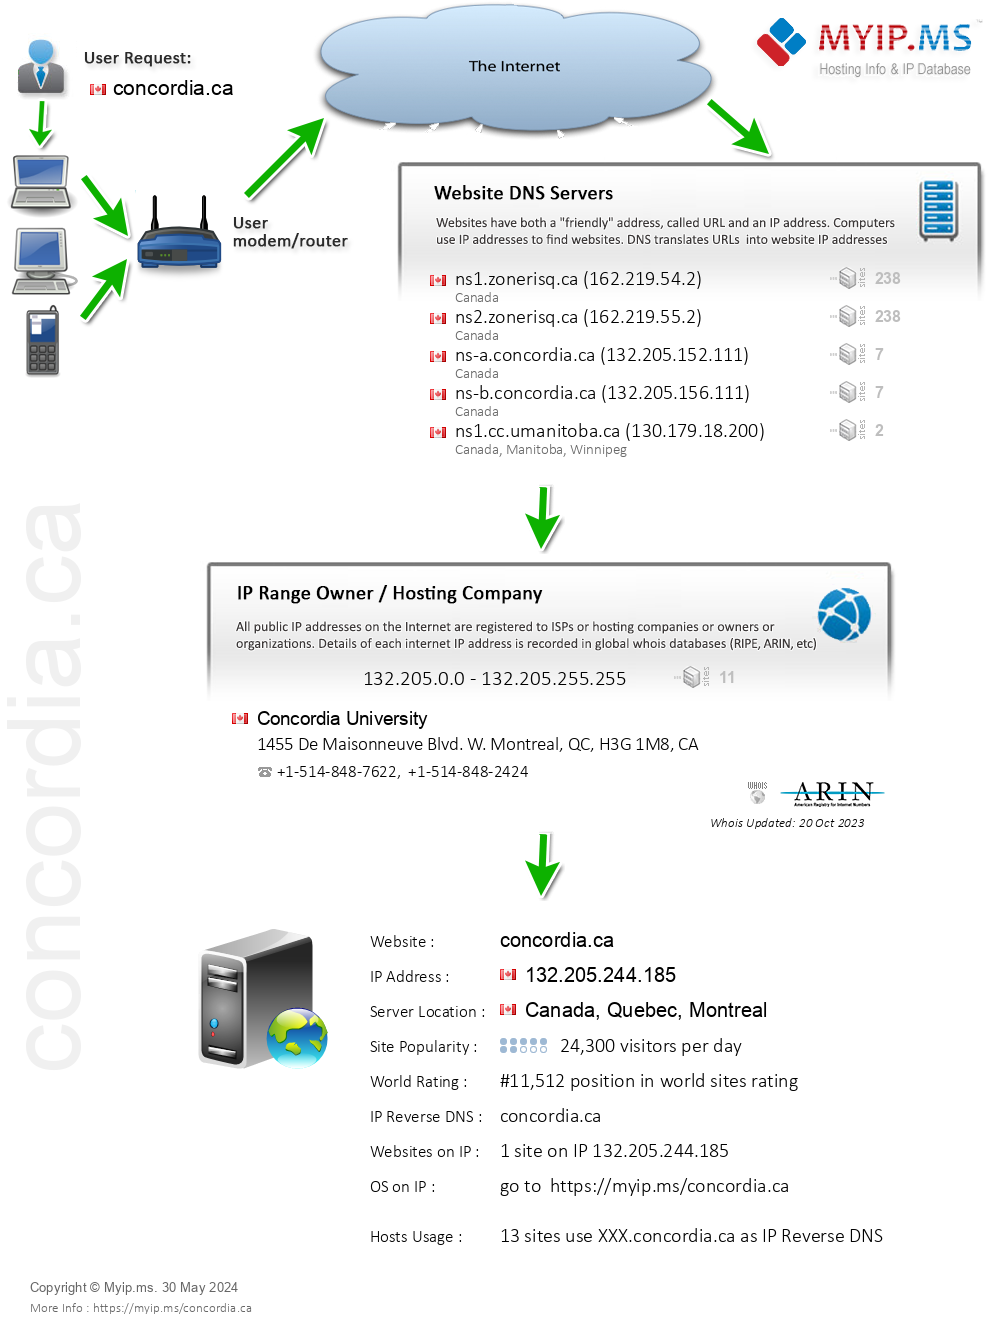 Concordia.ca - Website Hosting Visual IP Diagram